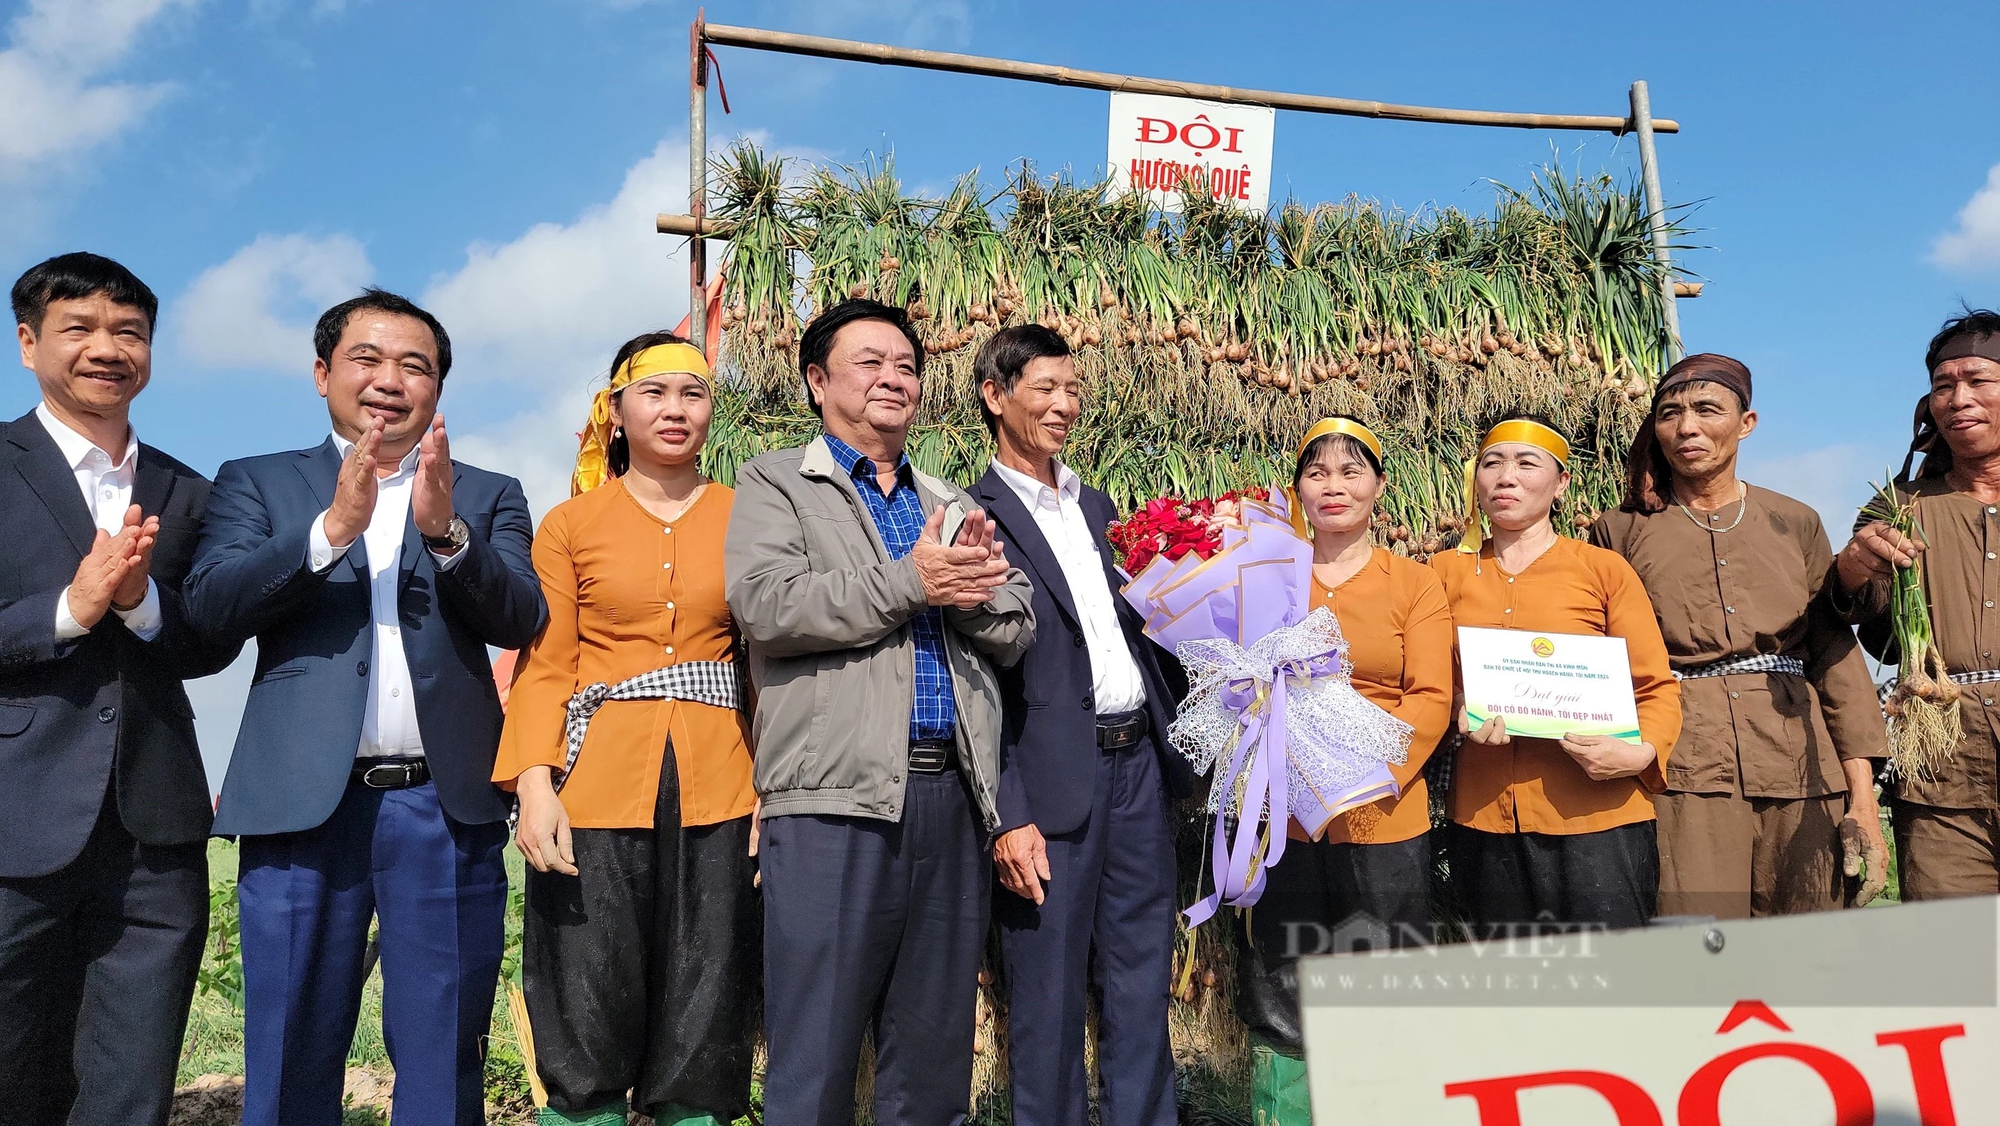 Bộ trưởng Lê Minh Hoan, Bí thư Tỉnh ủy Hải Dương Trần Đức Thắng xuống đồng cổ vũ nông dân thi nhổ hành, tỏi- Ảnh 18.